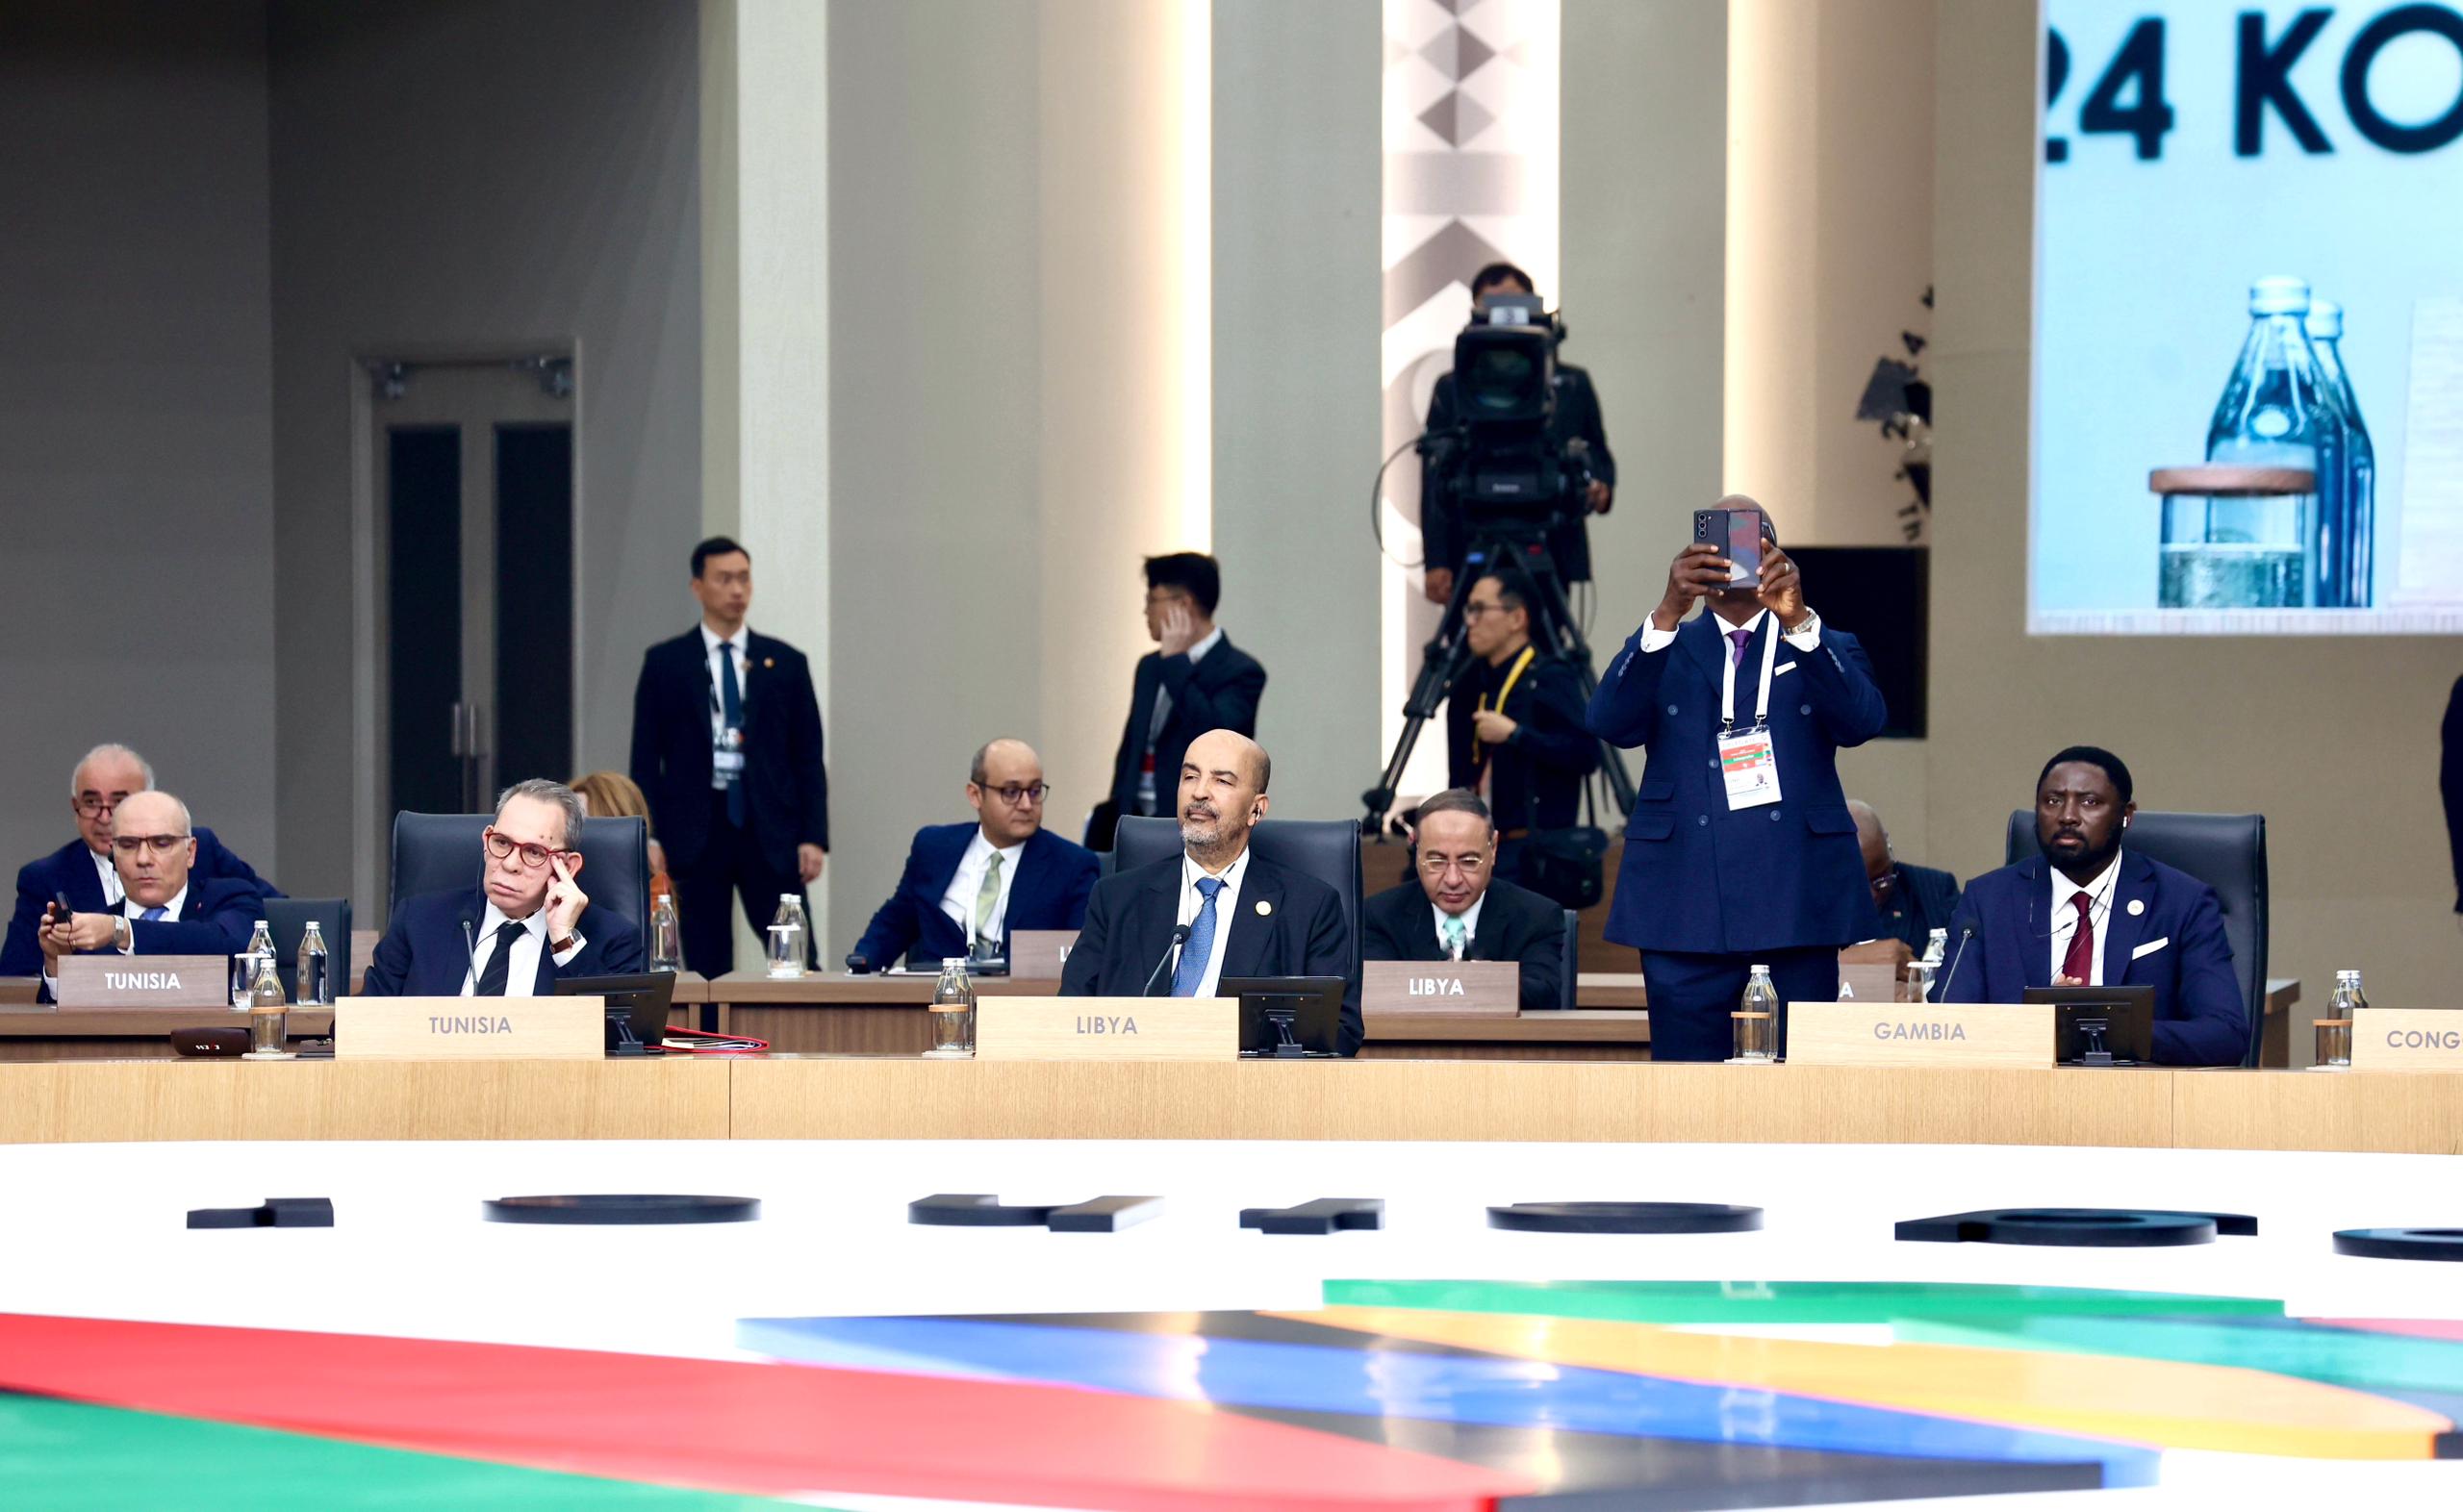 النائب بالمجلس الرئاسي موسى الكوني يشارك في القمة الأفريقية الكورية المنعقدة في سيول الكورية .